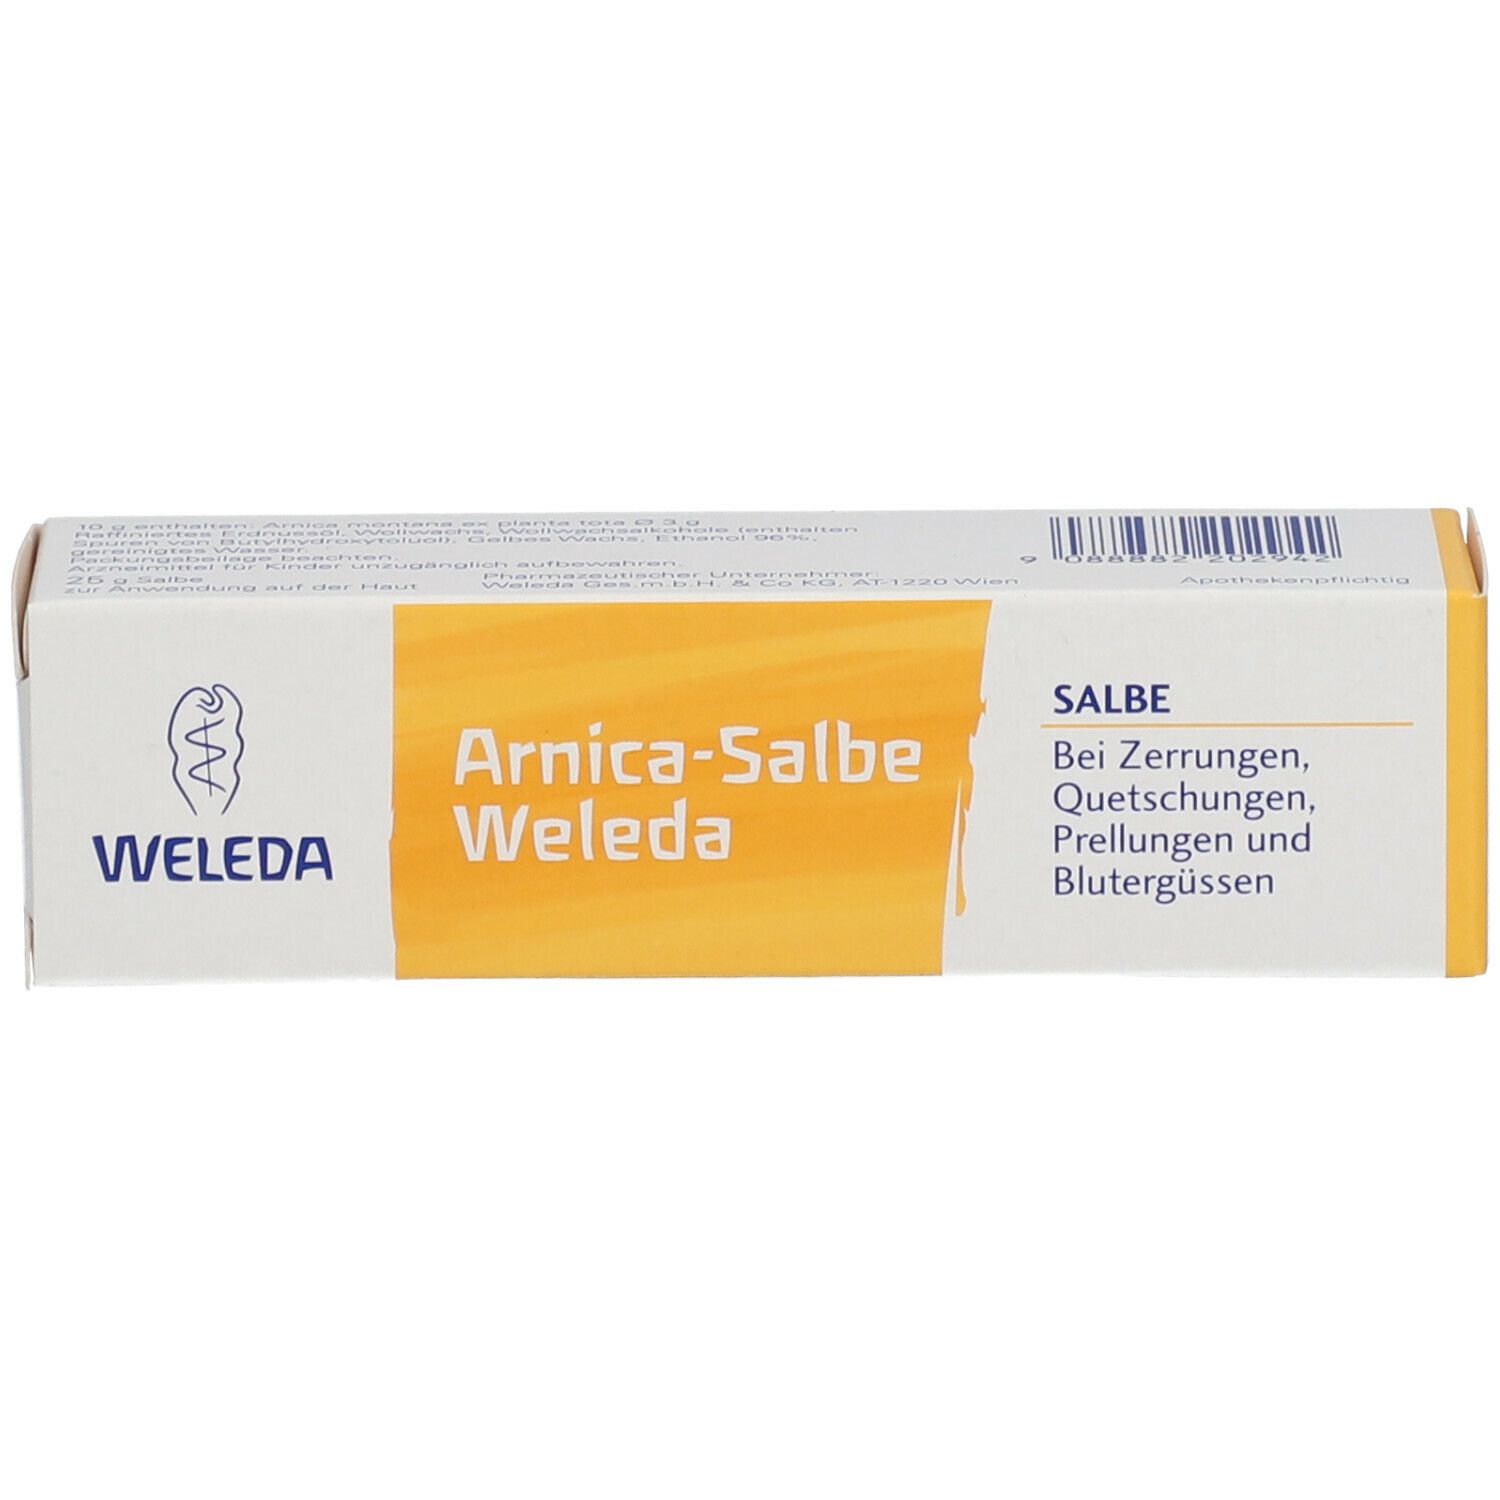 WELEDA Arnica-Salbe